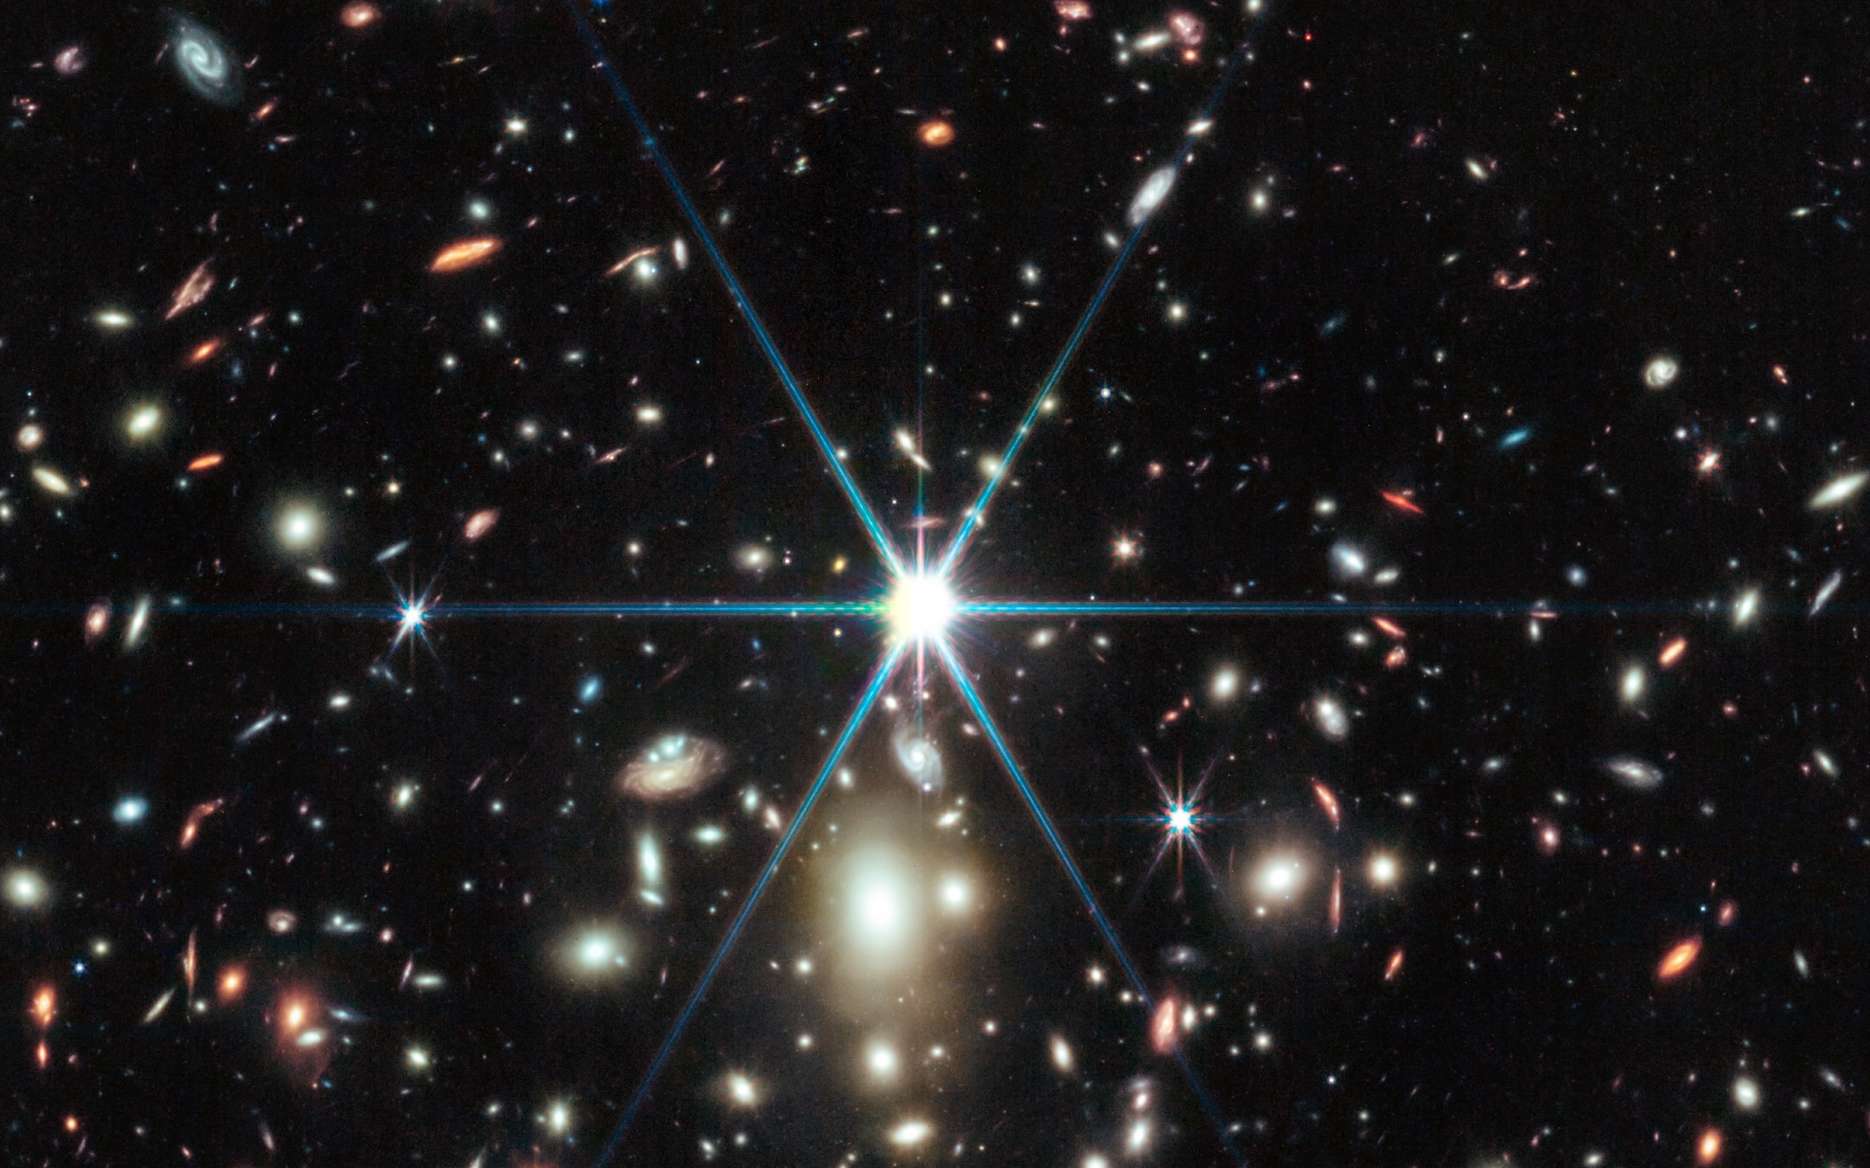 Le télescope James-Webb a disséqué Earendel, l'étoile la plus lointaine connue